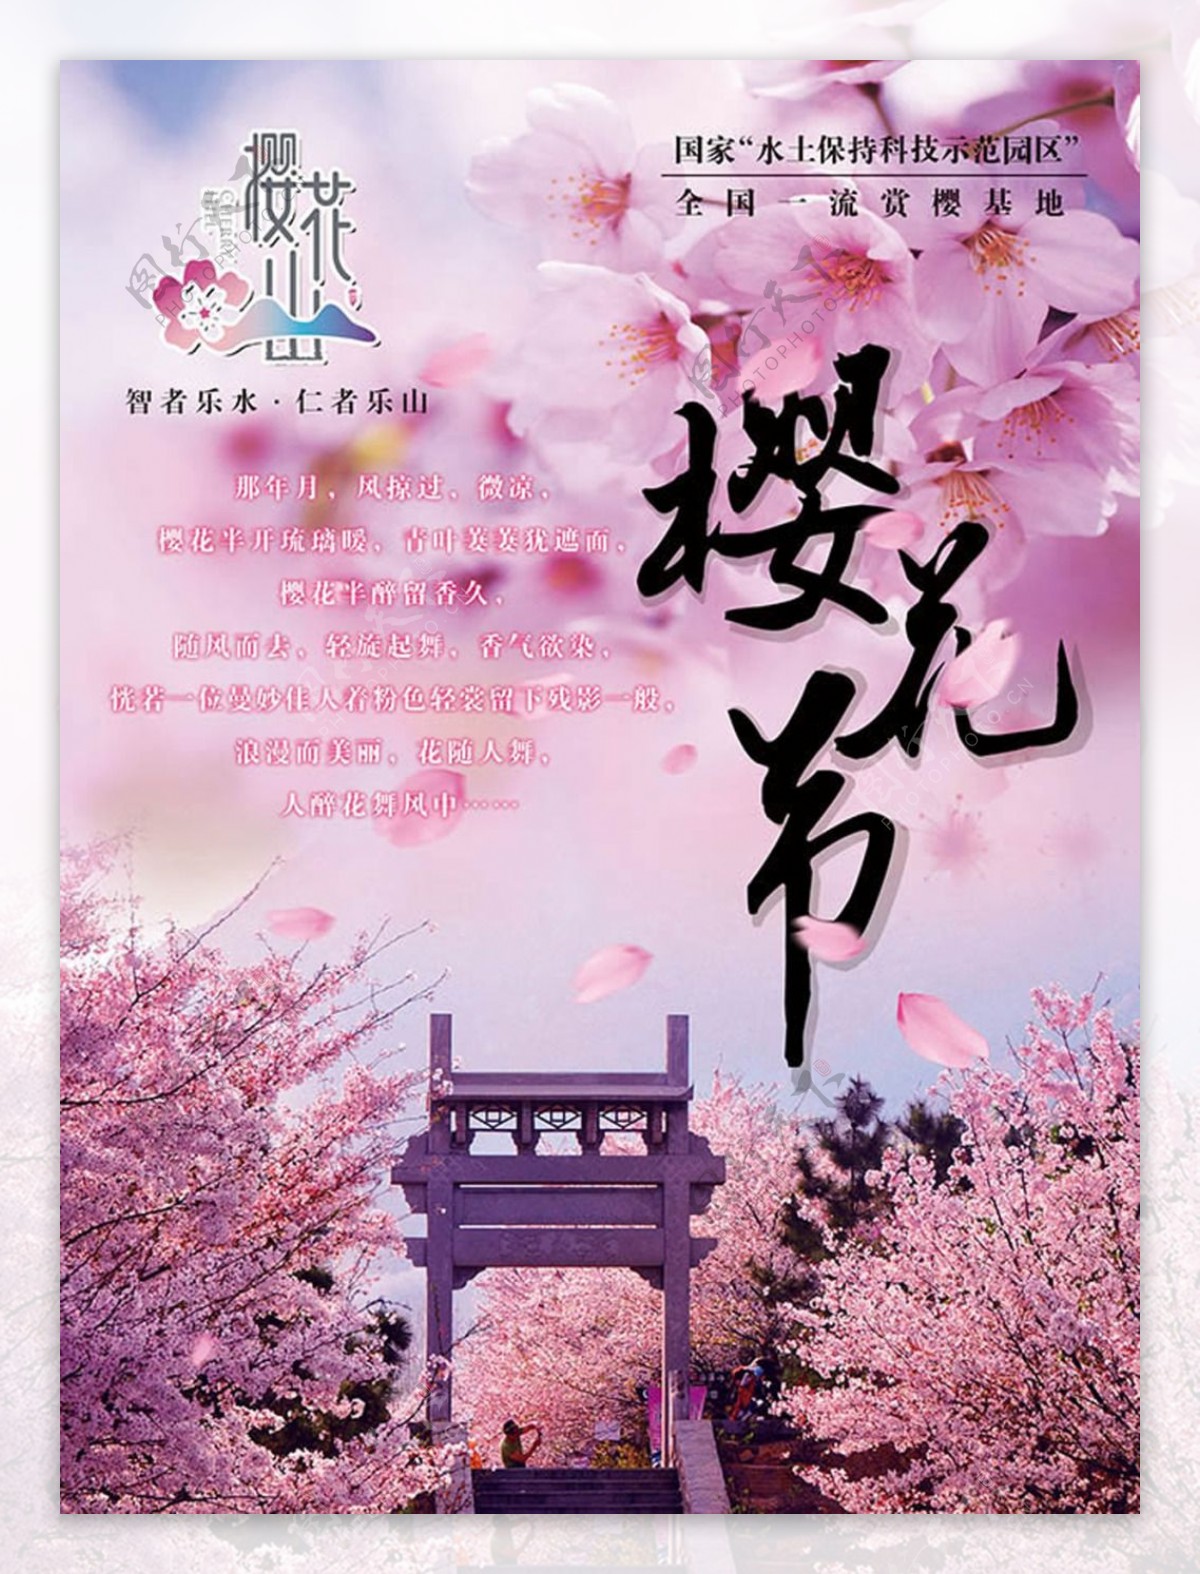 一流赏樱基地樱花节宣传海报设计psd